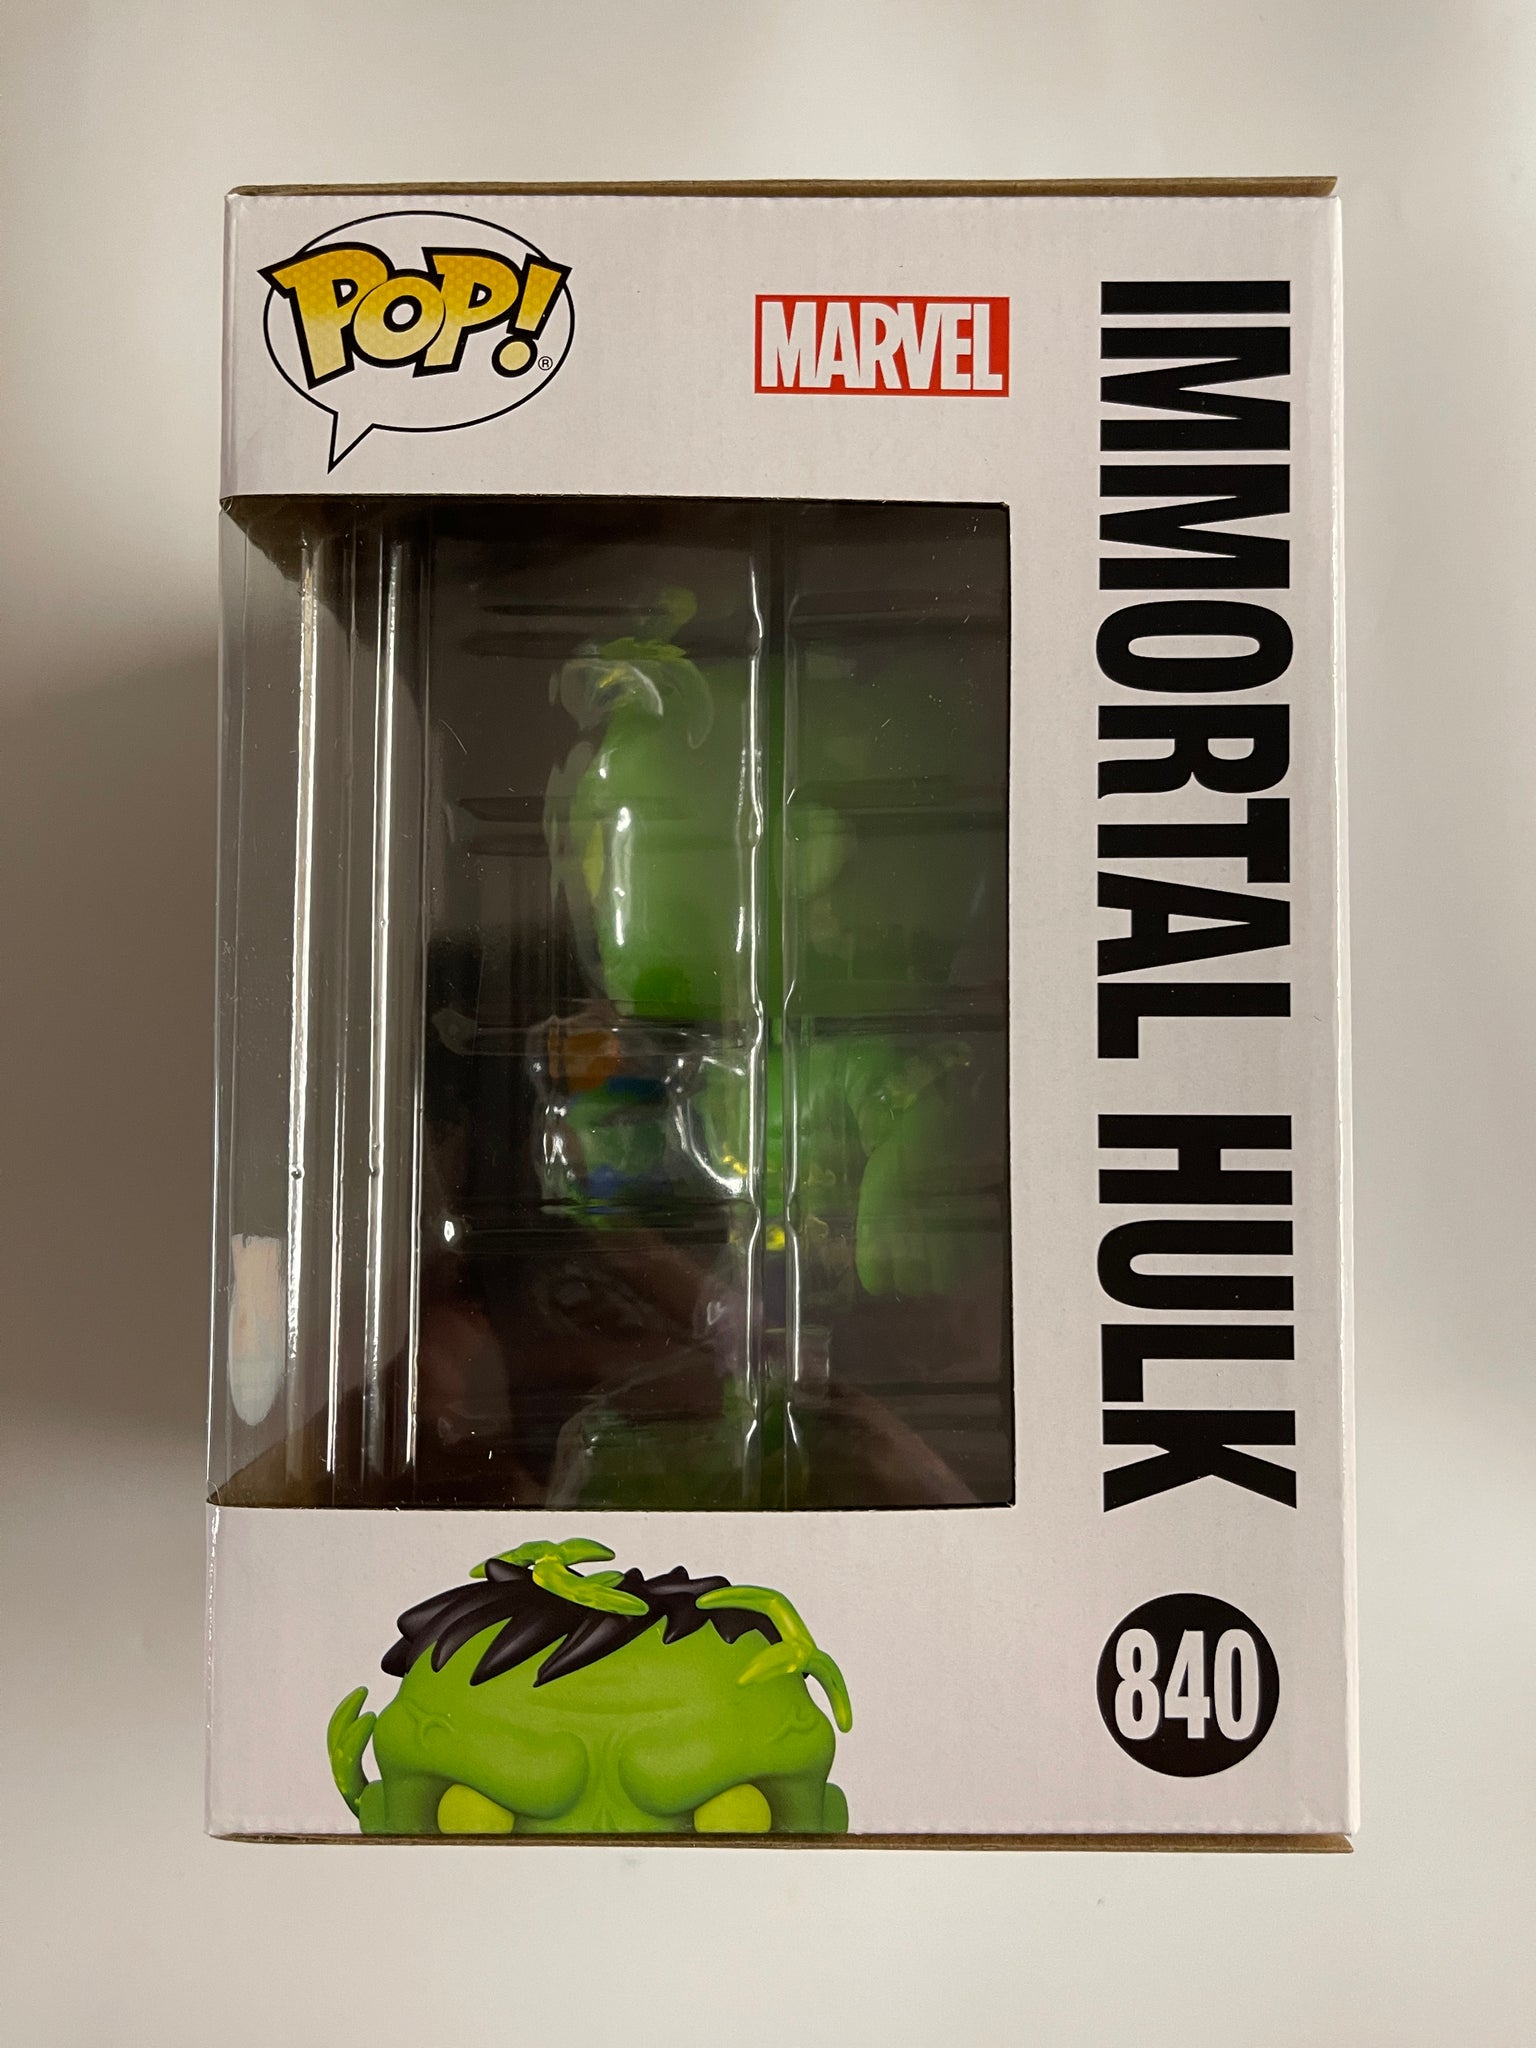 Figura Funko Pop! Immortal Hulk y Comic PX Marvel